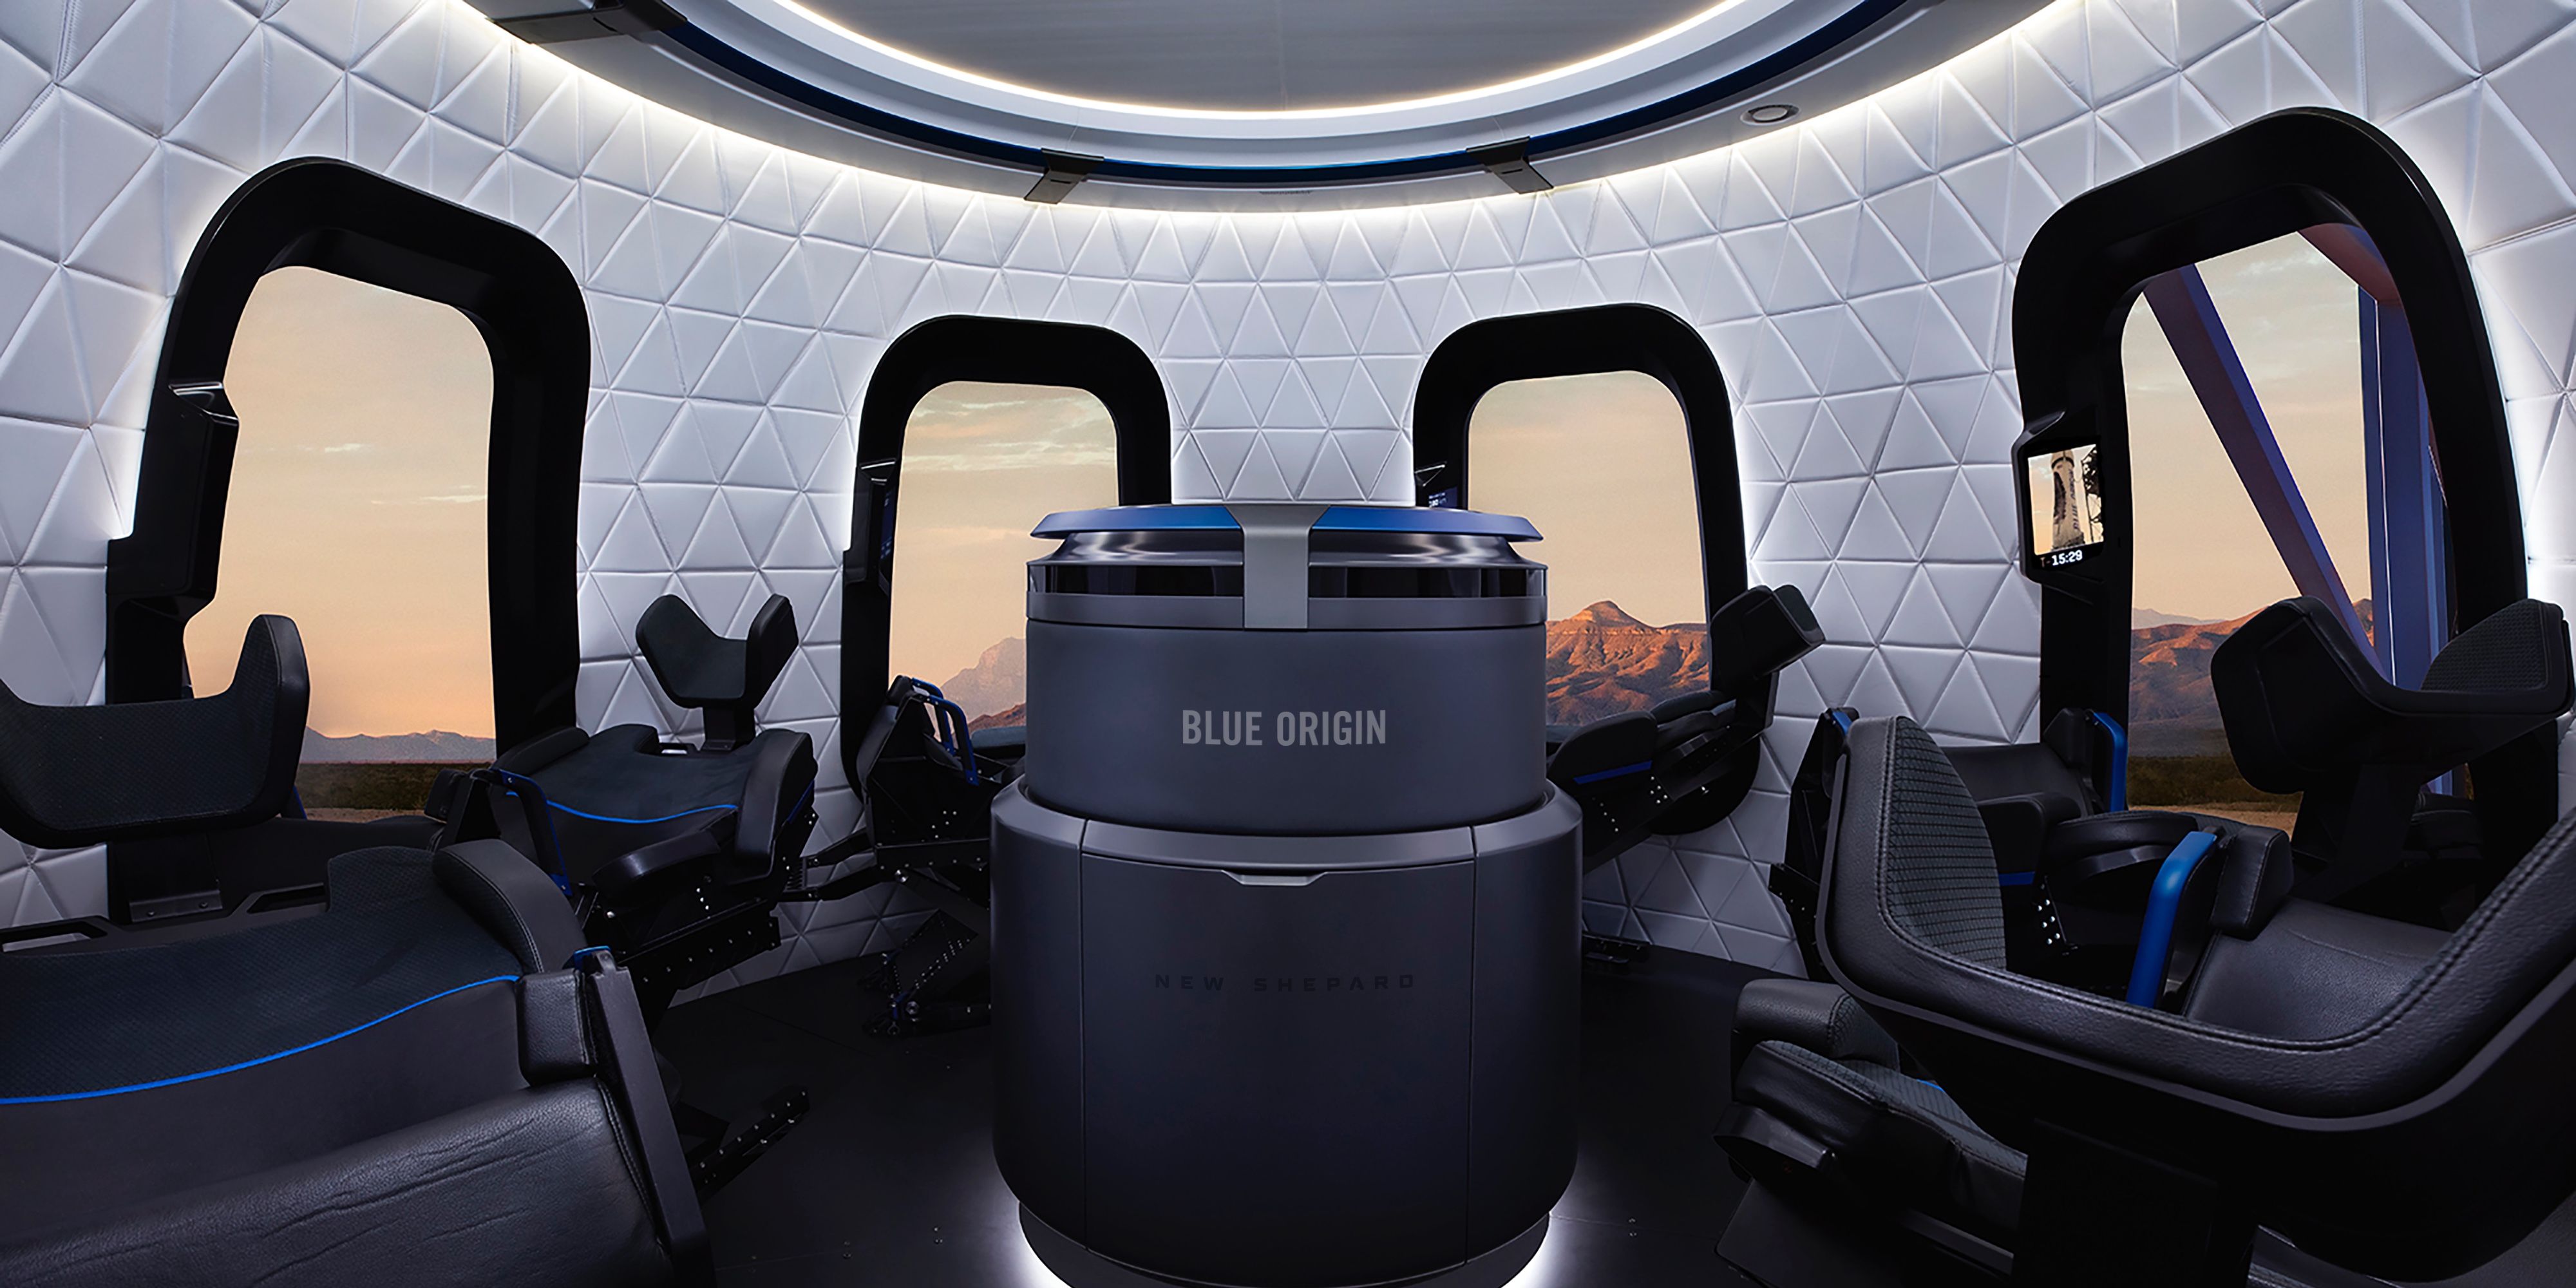 Interior of the Blue Origin space tourism ship.